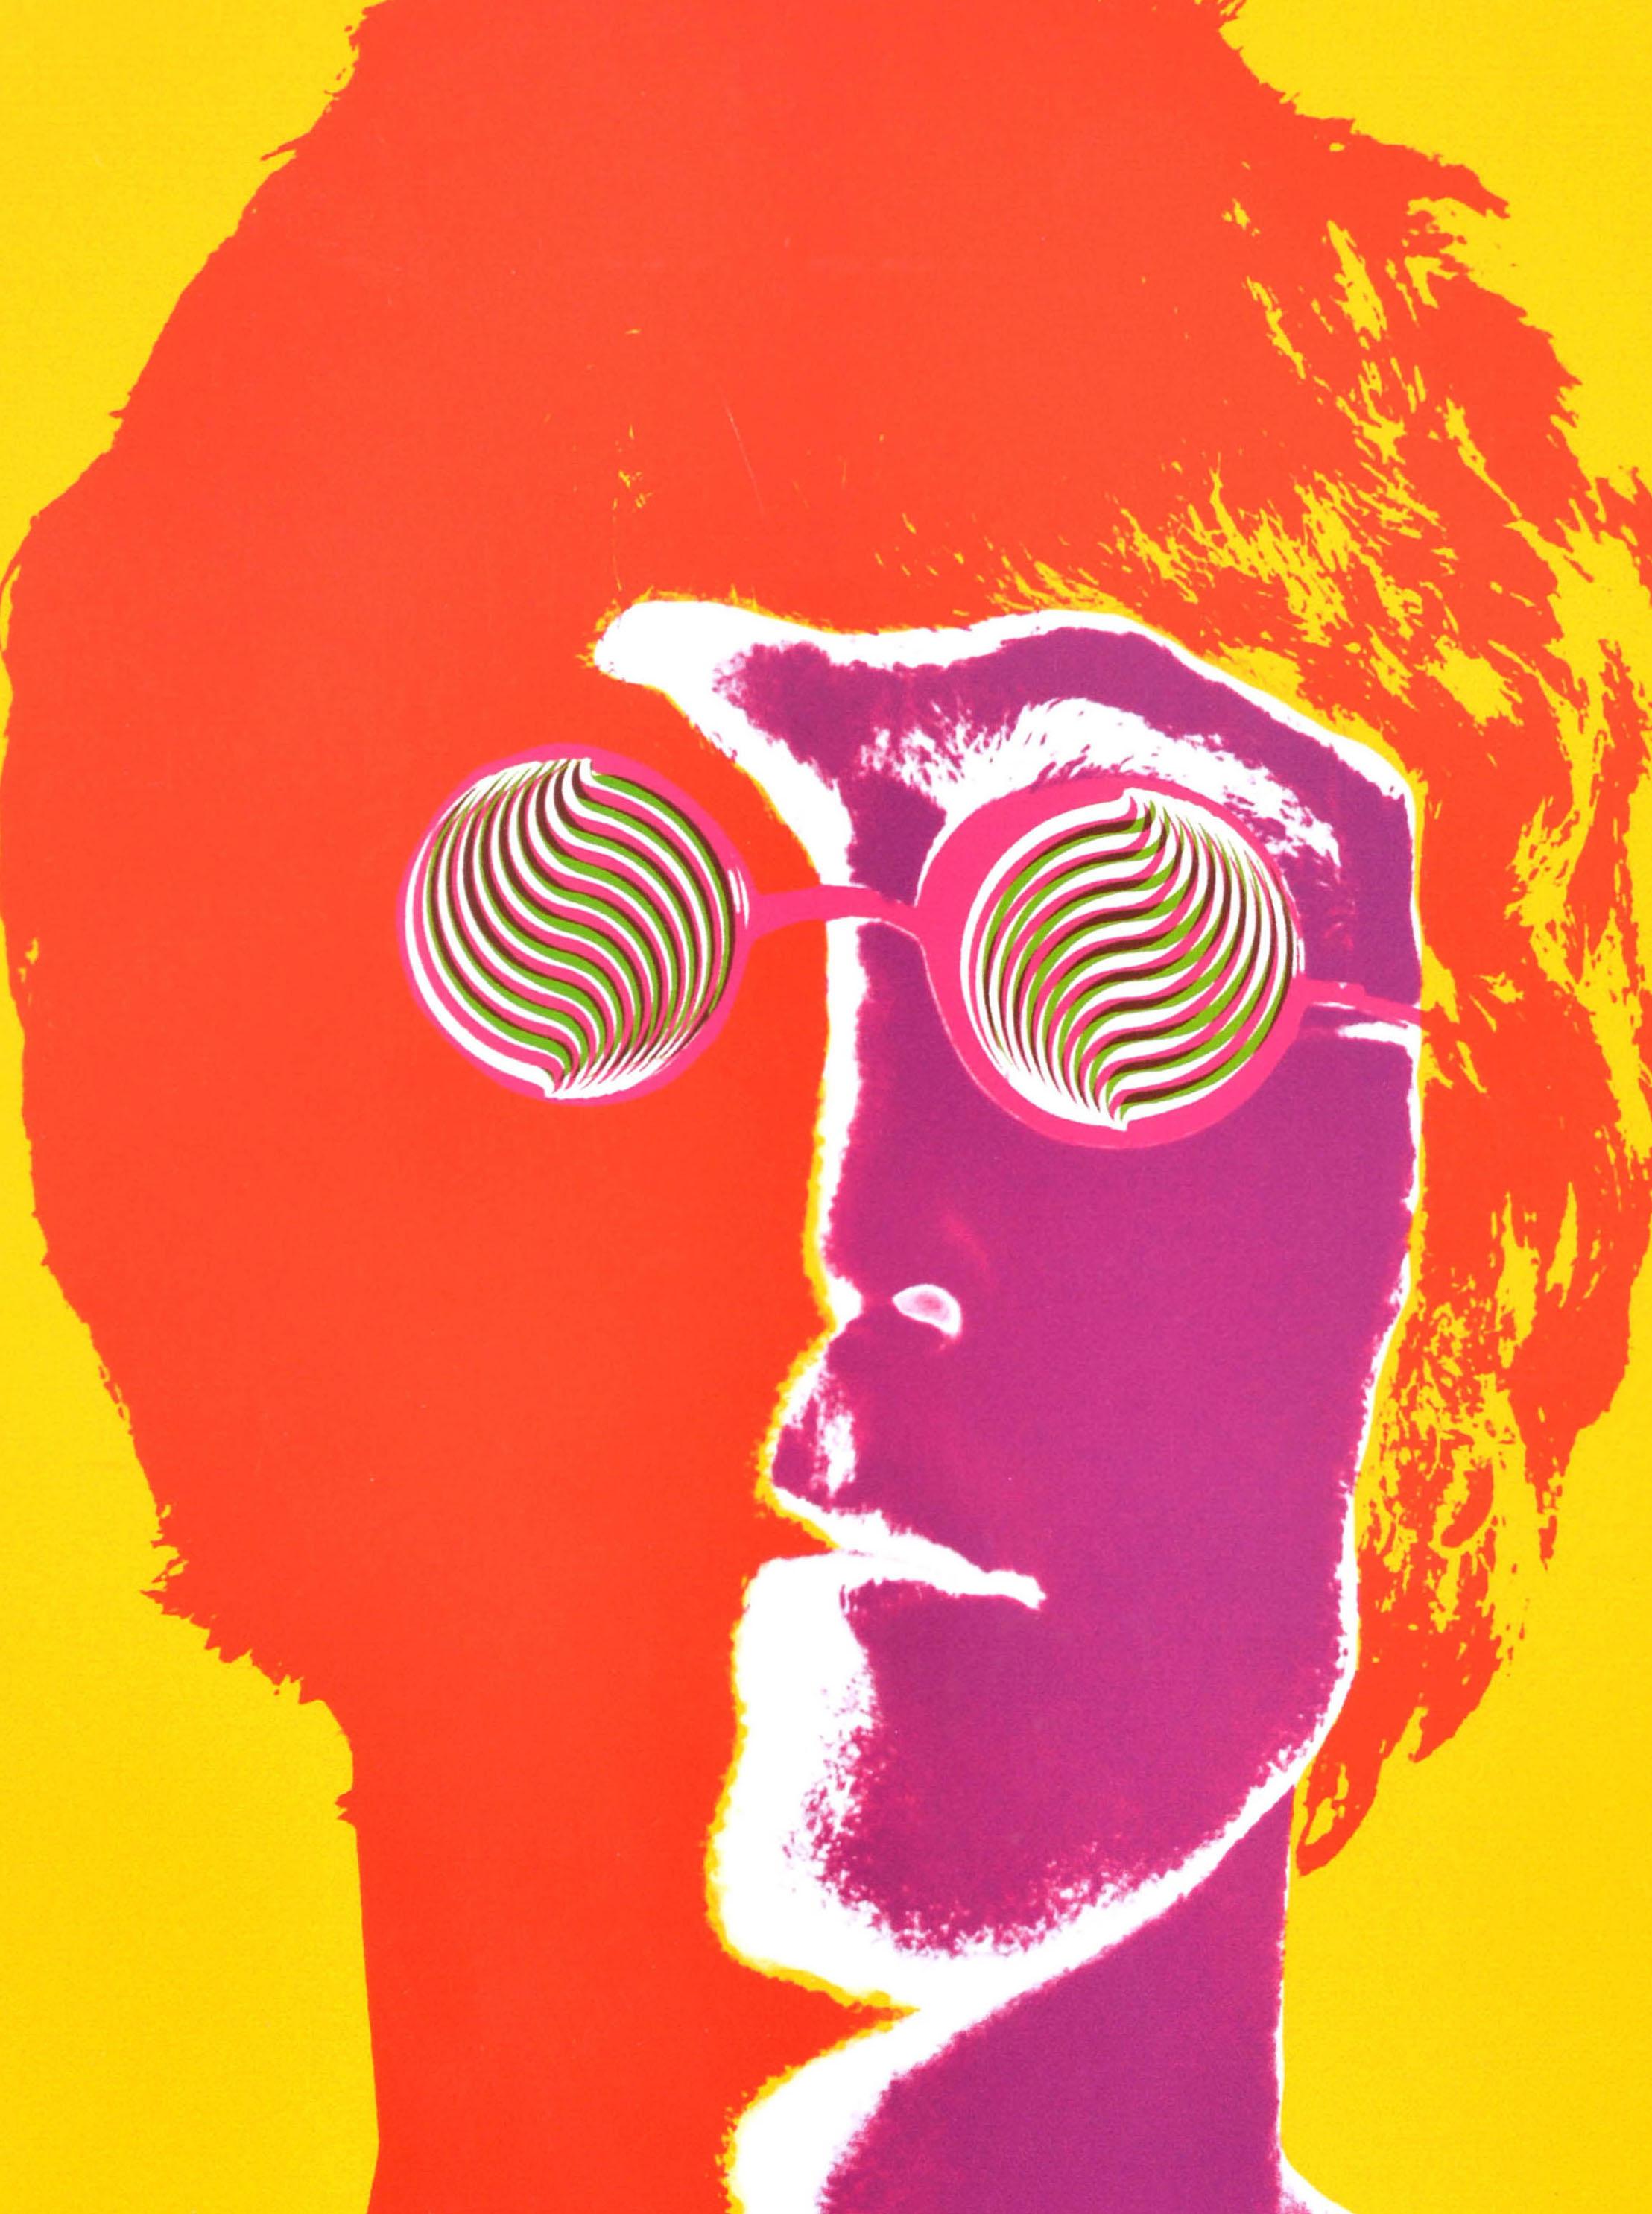 Affiche publicitaire vintage originale des Beatles avec les verres John Lennon d'Avedon - Print de Richard Avedon